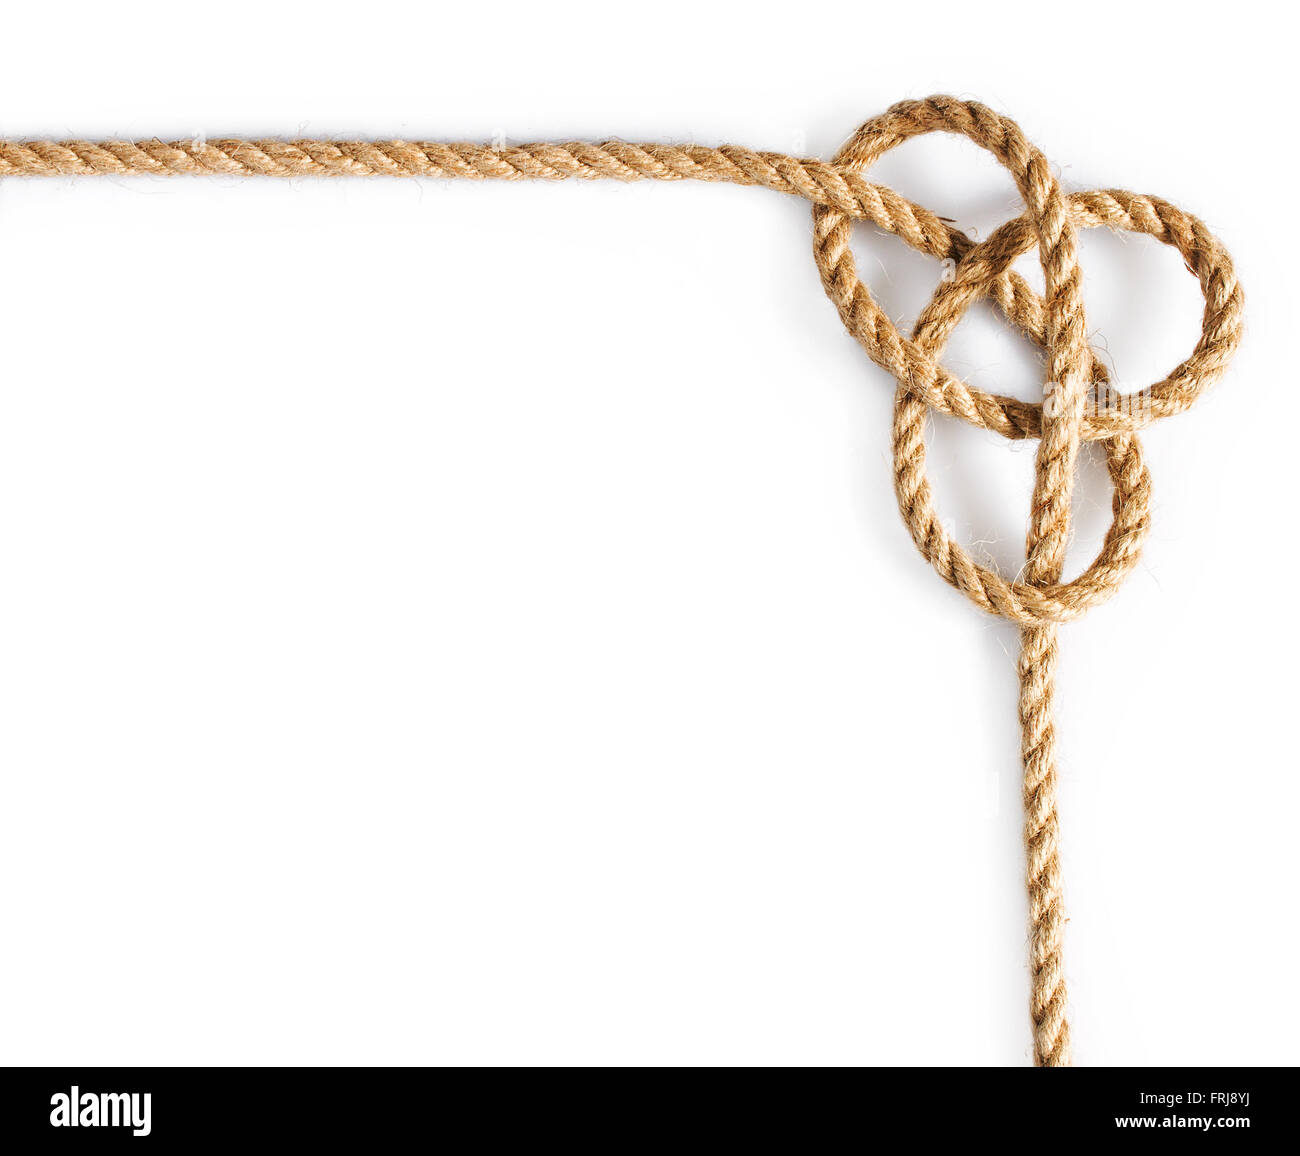 Corda con marinaio legata al nodo isolato su sfondo bianco Foto stock -  Alamy